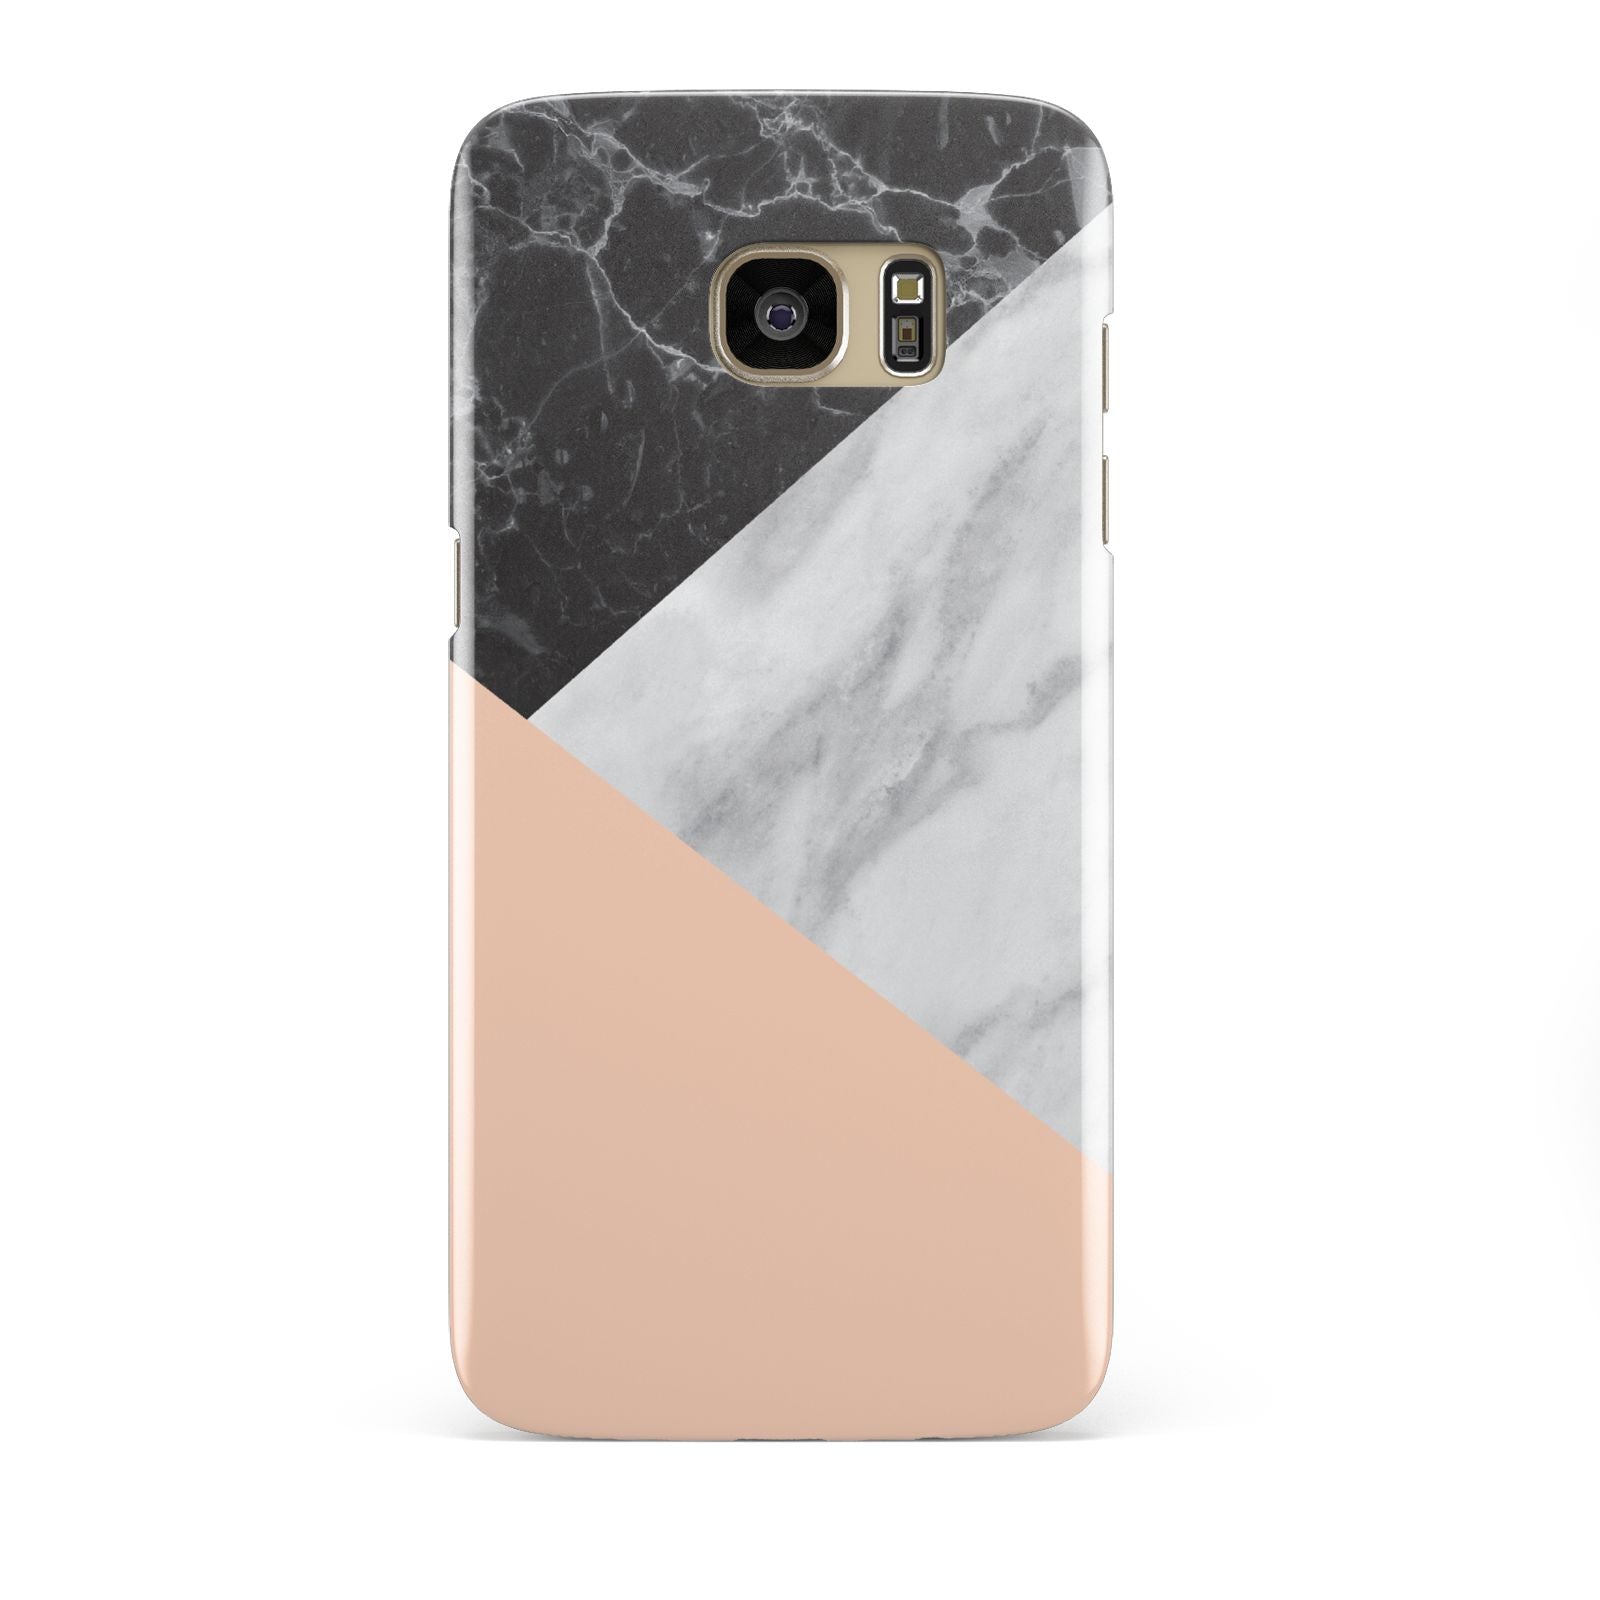 Marble Black White Grey Peach Samsung Galaxy S7 Edge Case